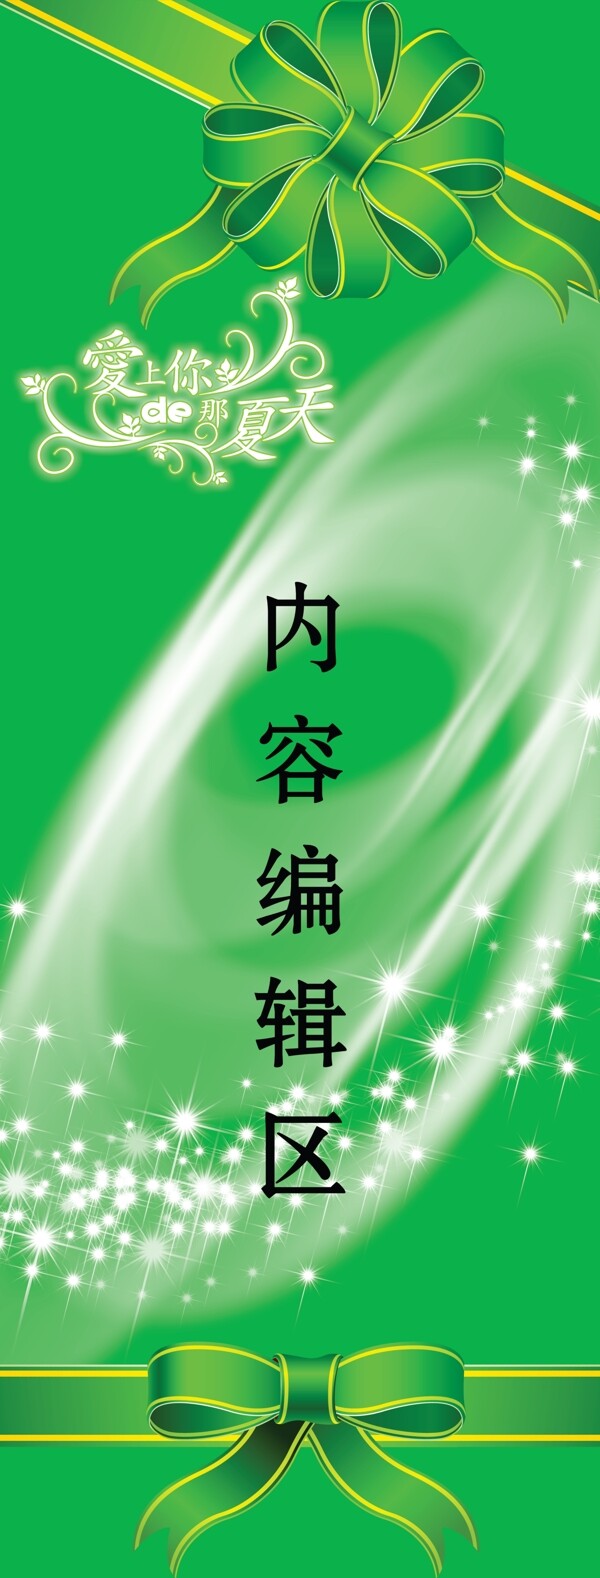 绿色蝴蝶结星光图片